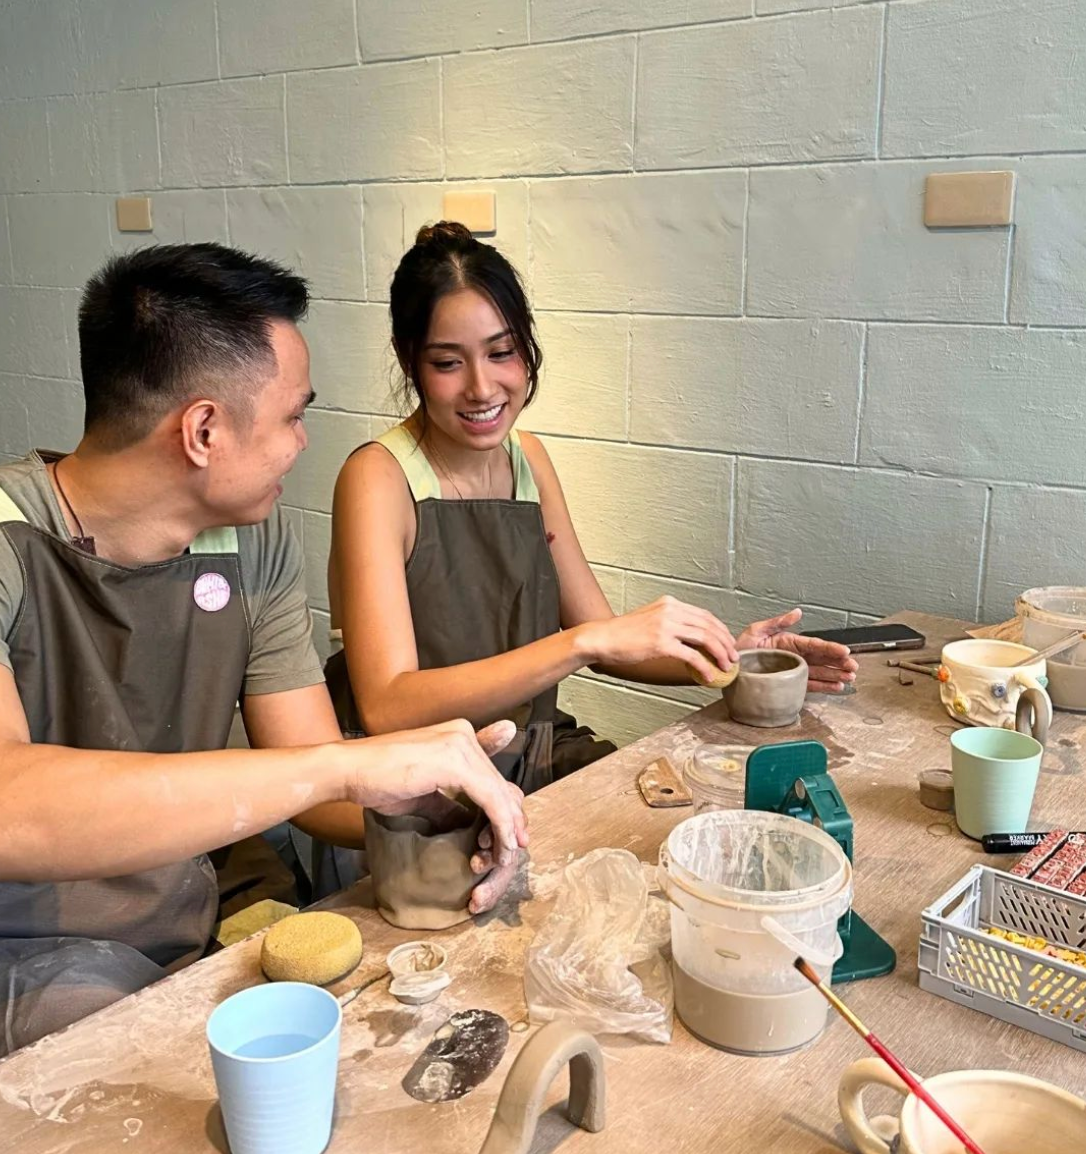 Pottery and Rug Making at Studio Yakal, Makati